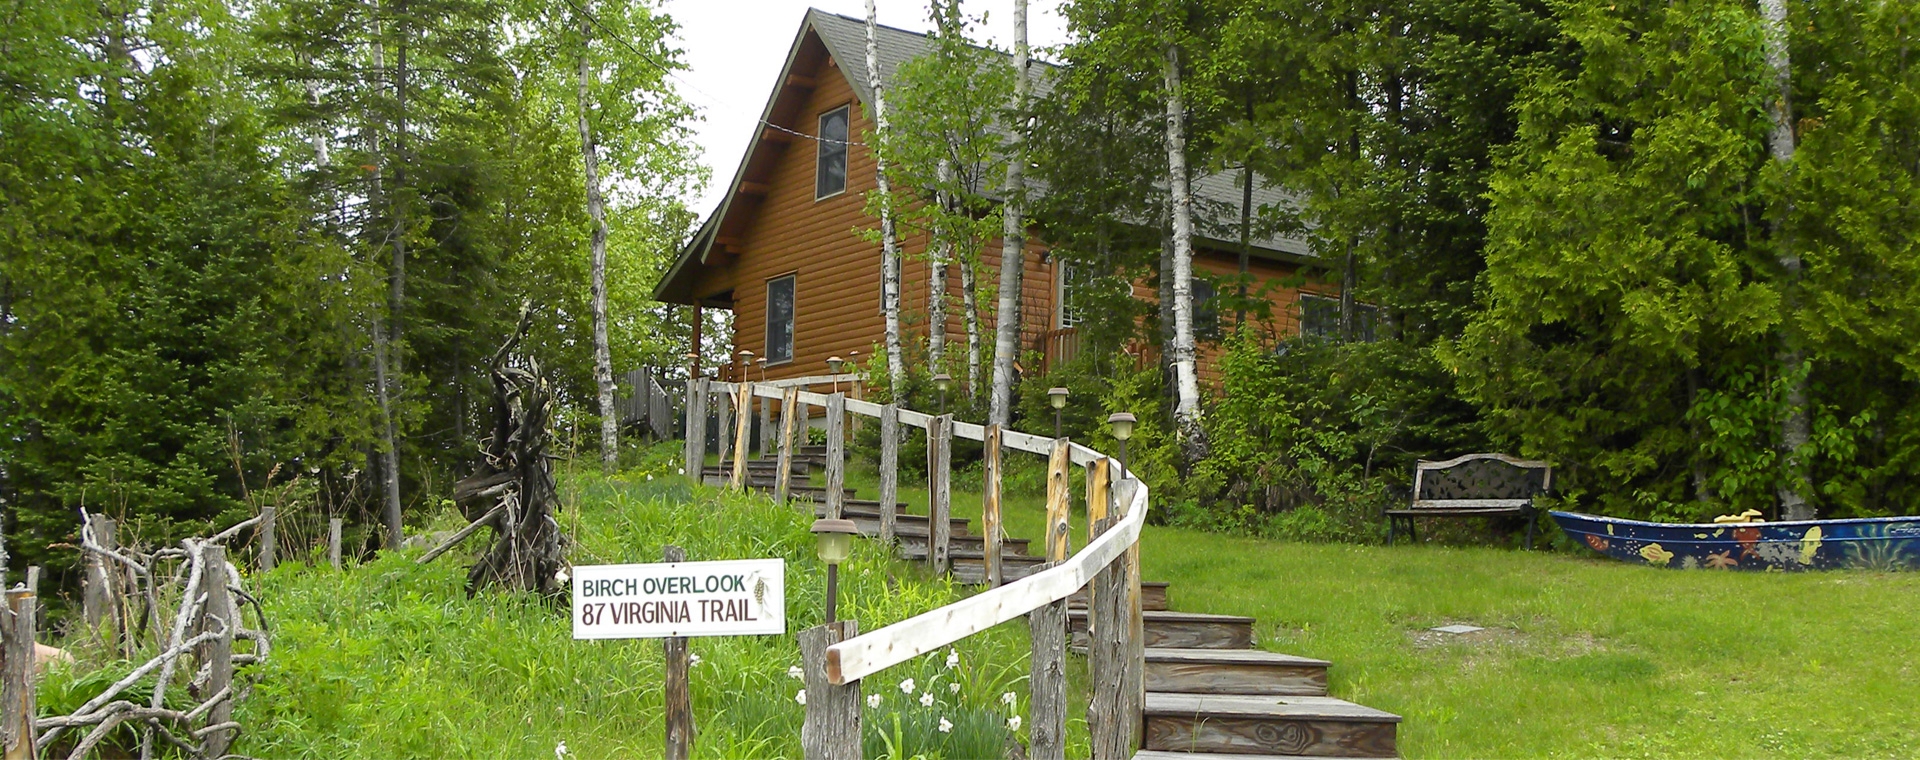 Moosetracks Family Cottages Birch Overlook